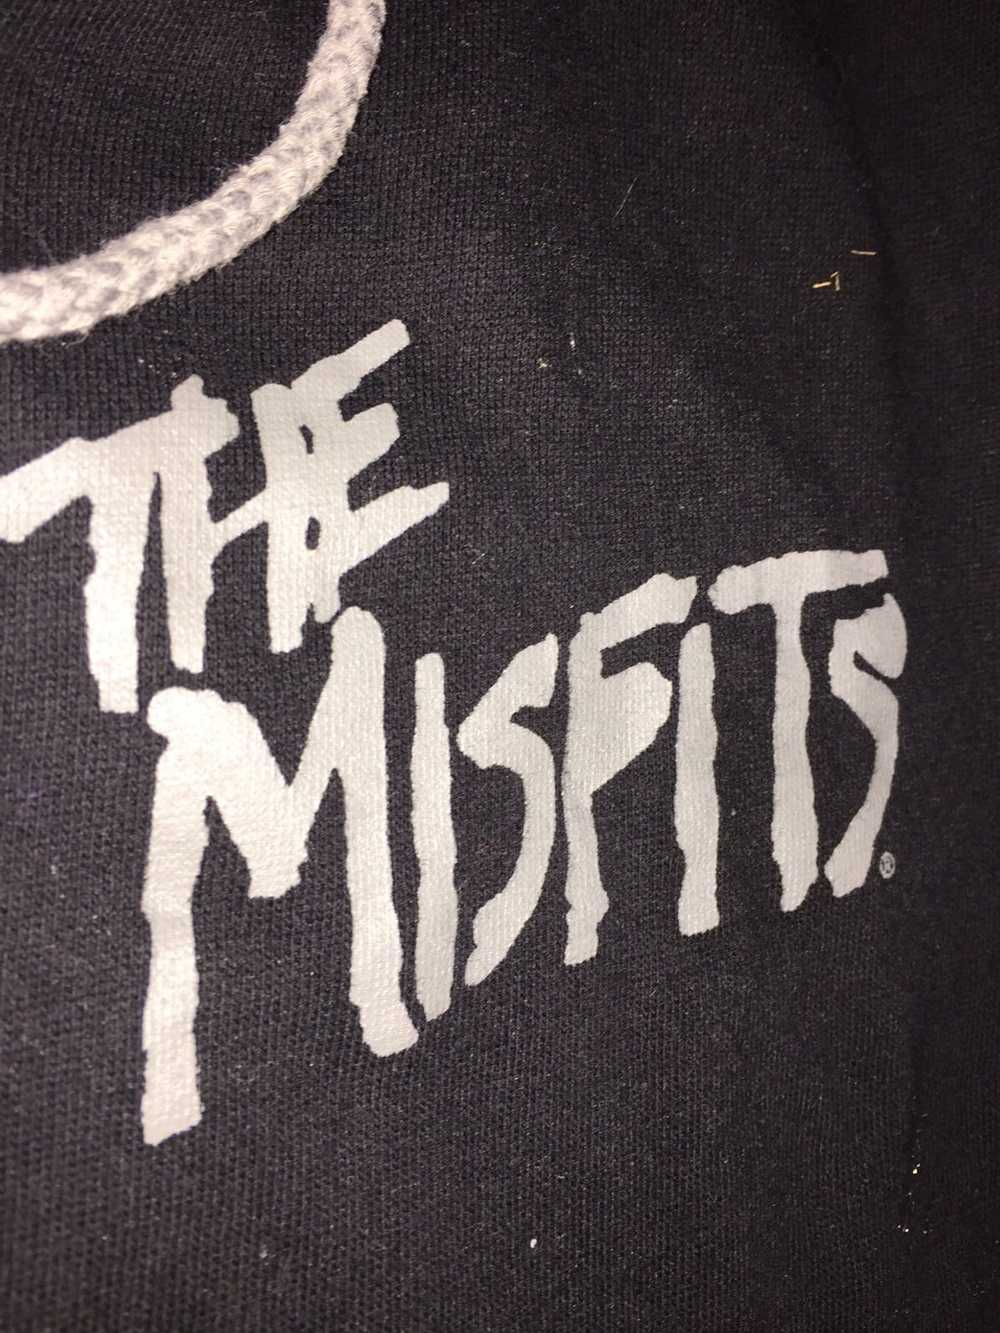 Misfits Misfits die die my darling jacket - image 2